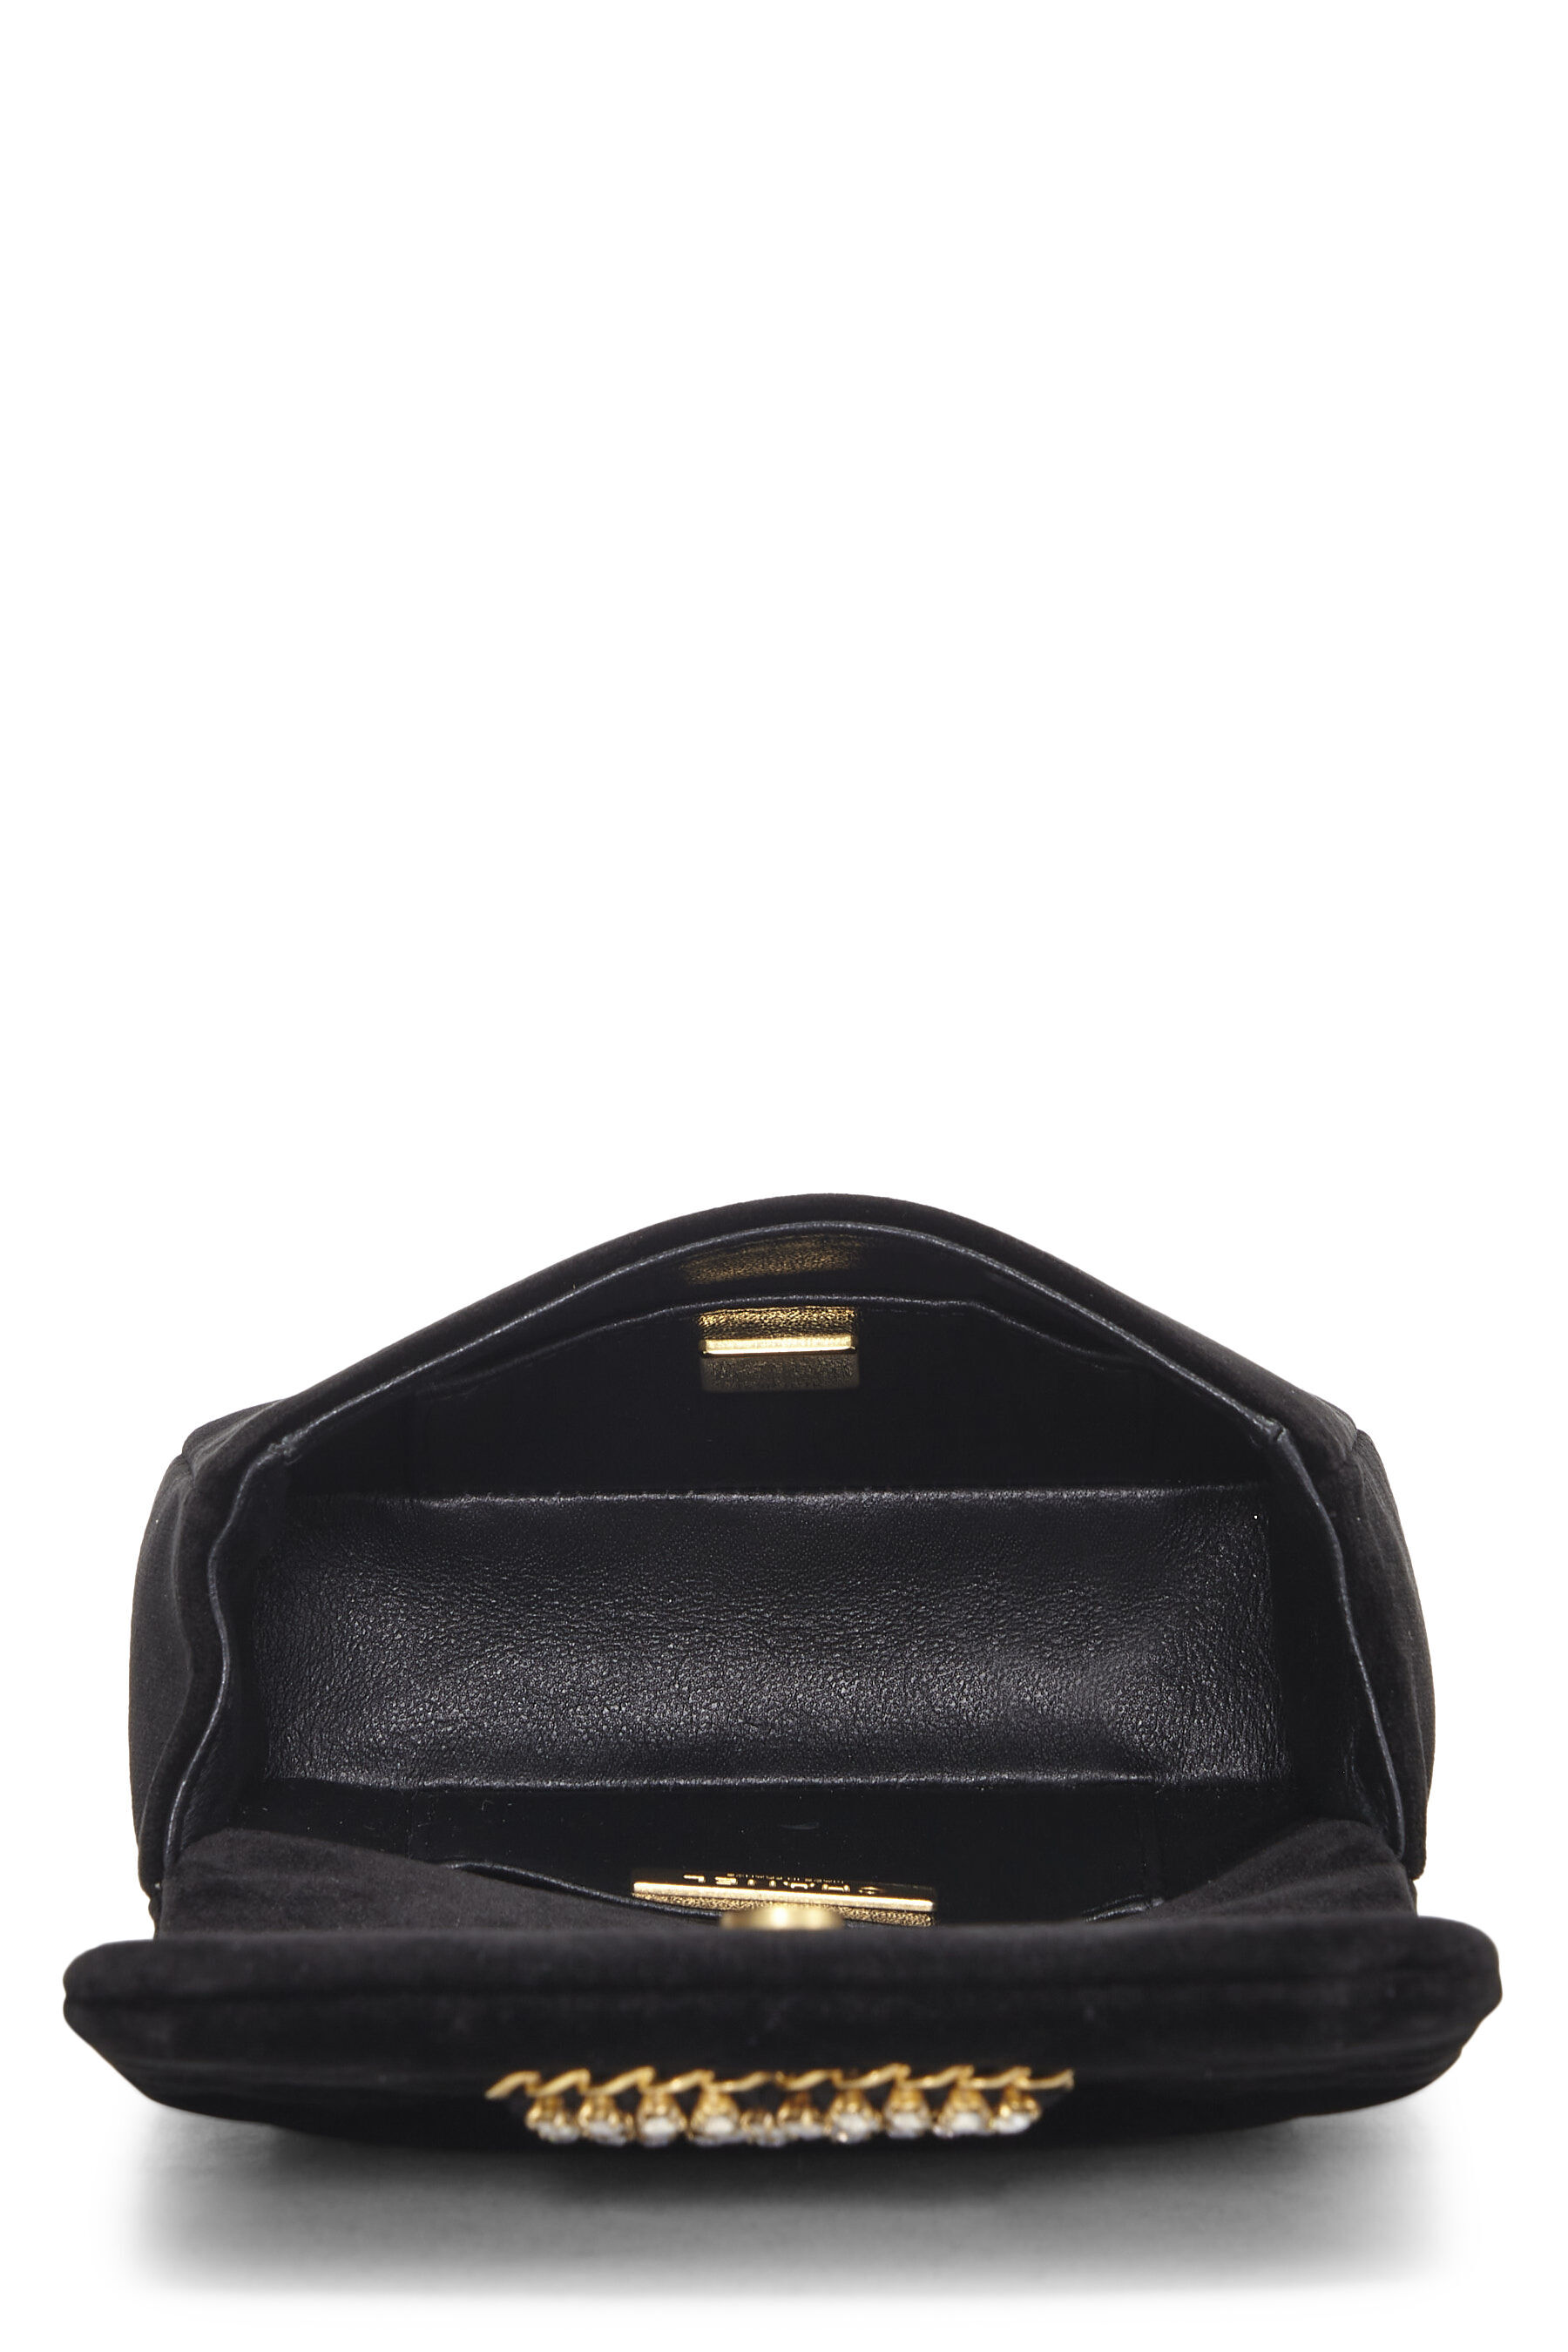 Aldo Black Purse with Gold Chain | Black purses, Leather shoulder purse,  Purses